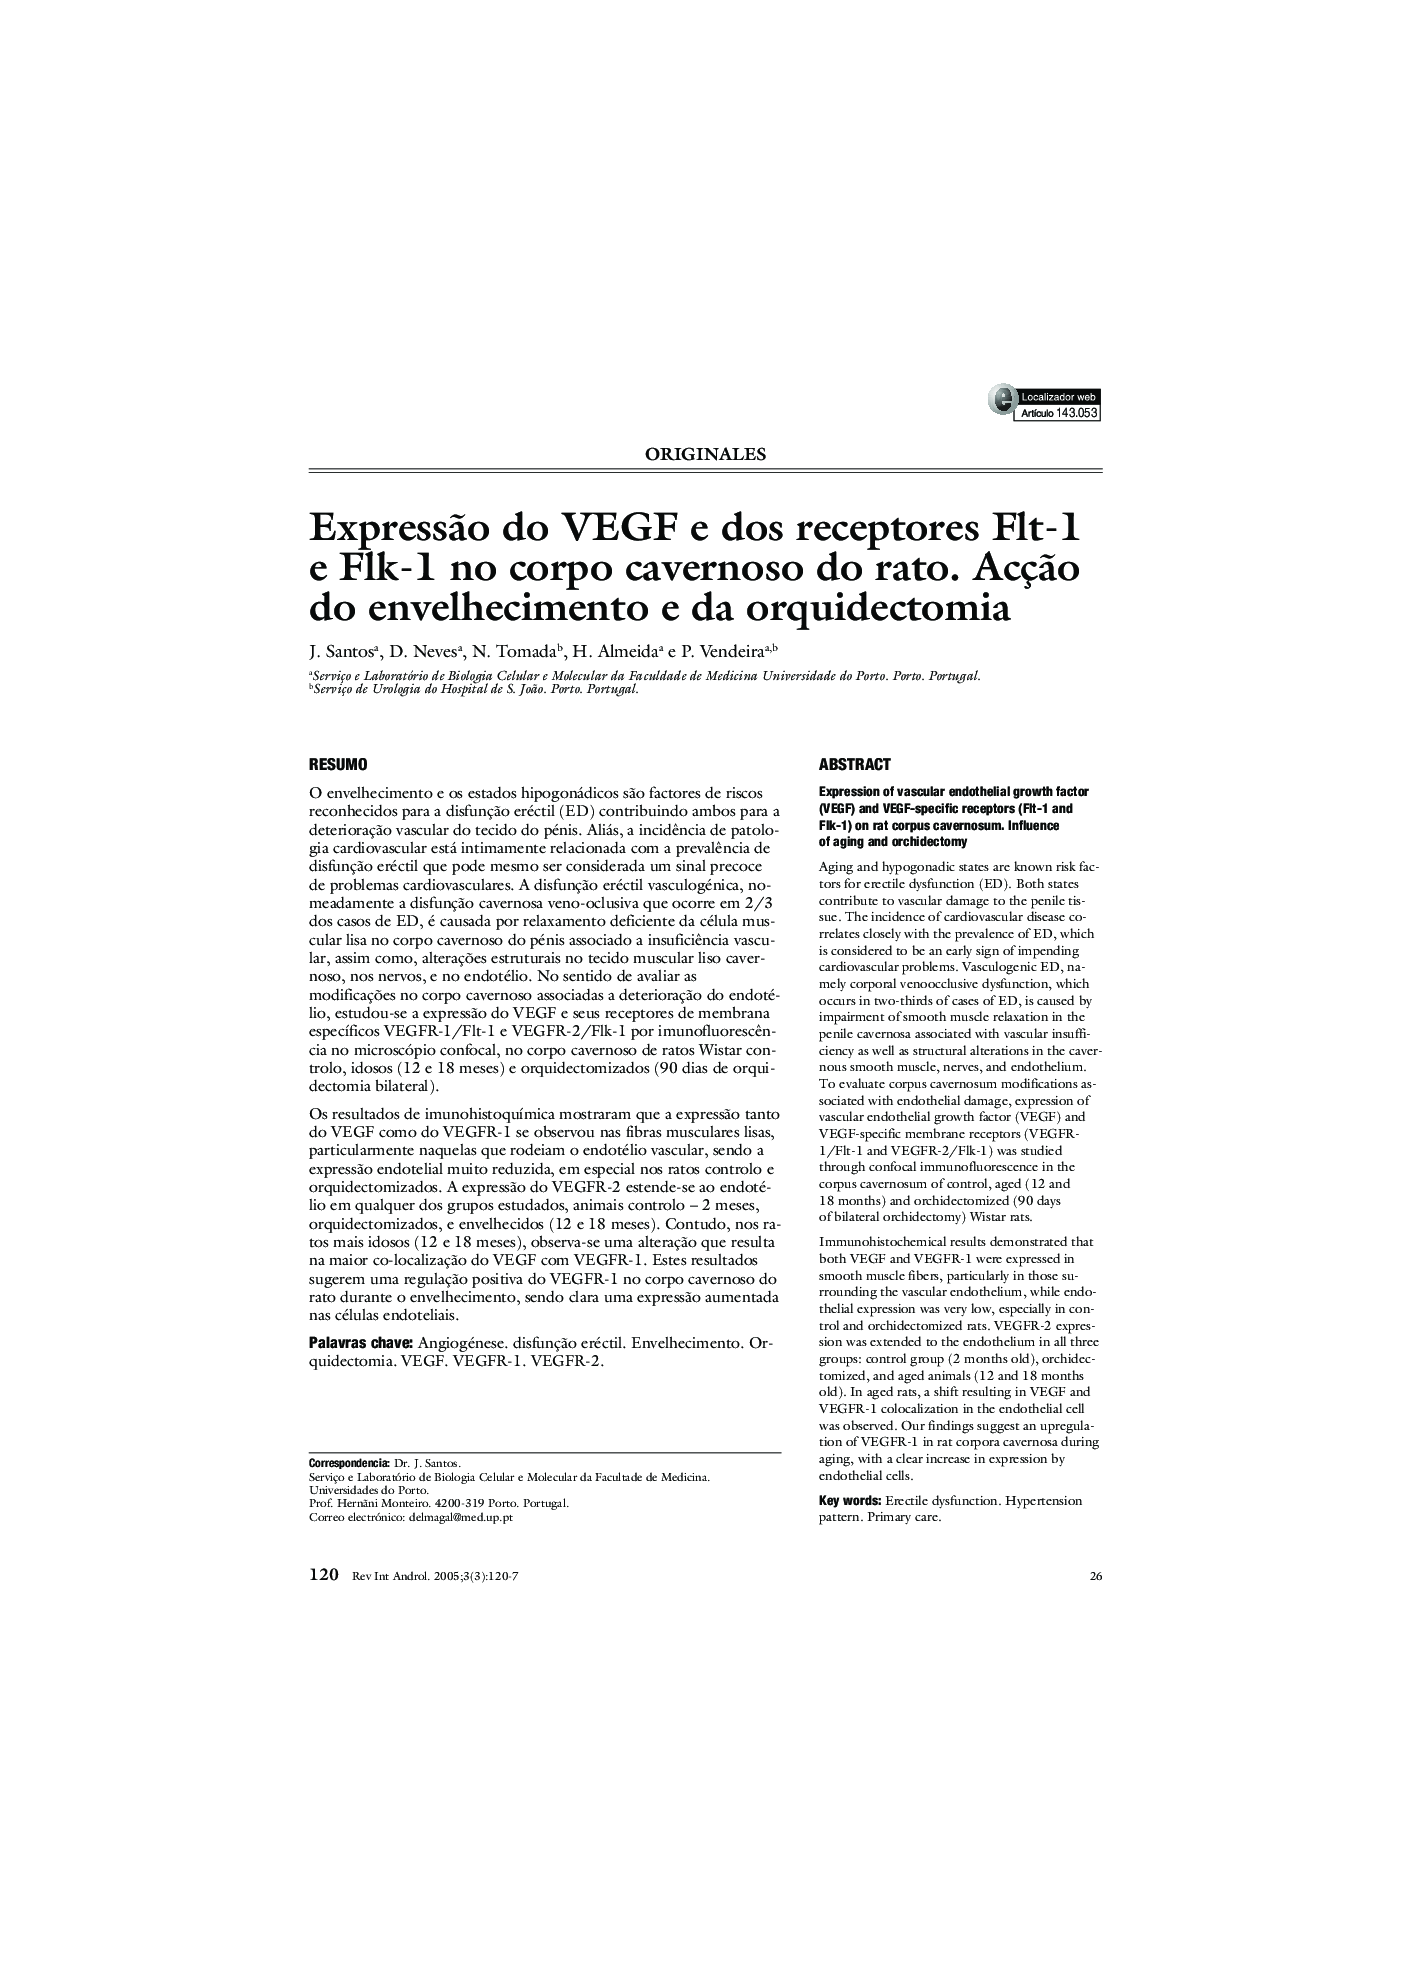 ExpressÃ£o do VEGF e dos receptores Flt-1 e Flk-1 no corpo cavernoso do rato. AcçÃ£o do envelhecimento e da orquidectomia